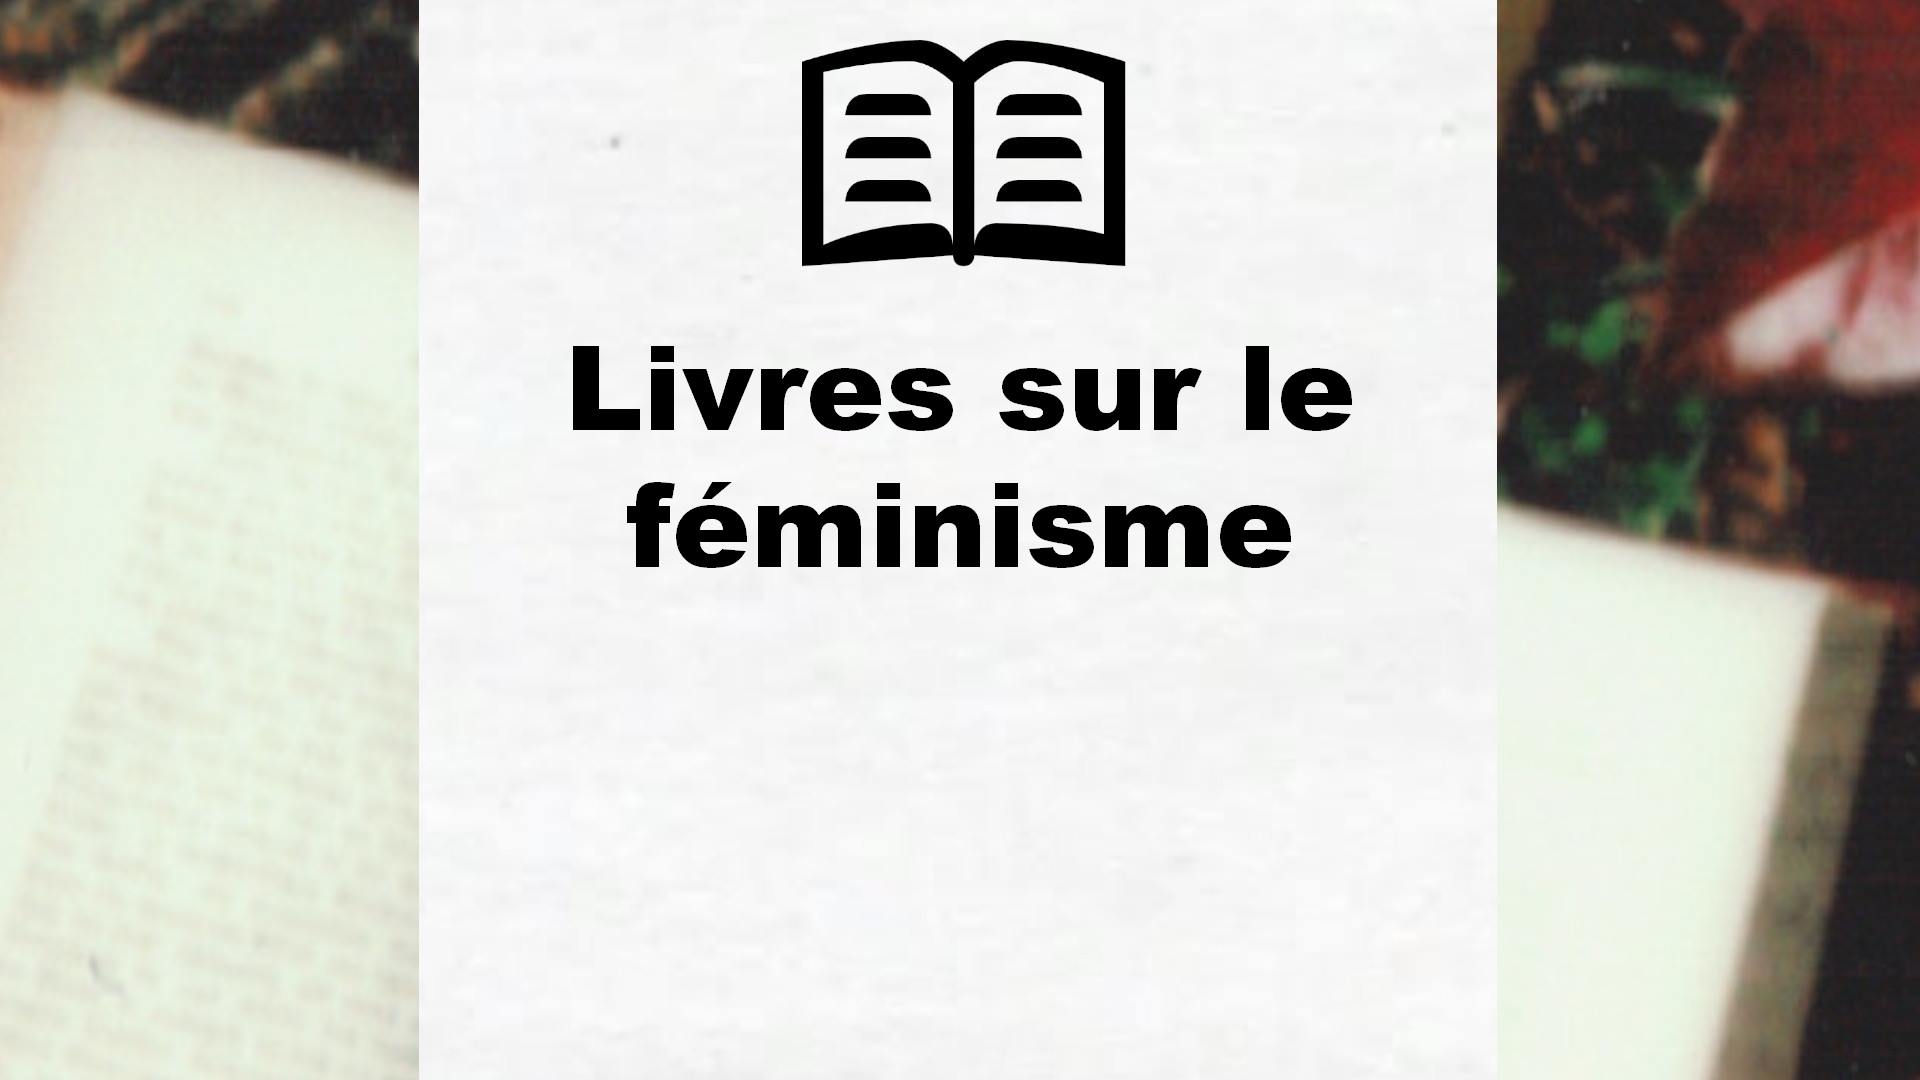 Livres sur le féminisme